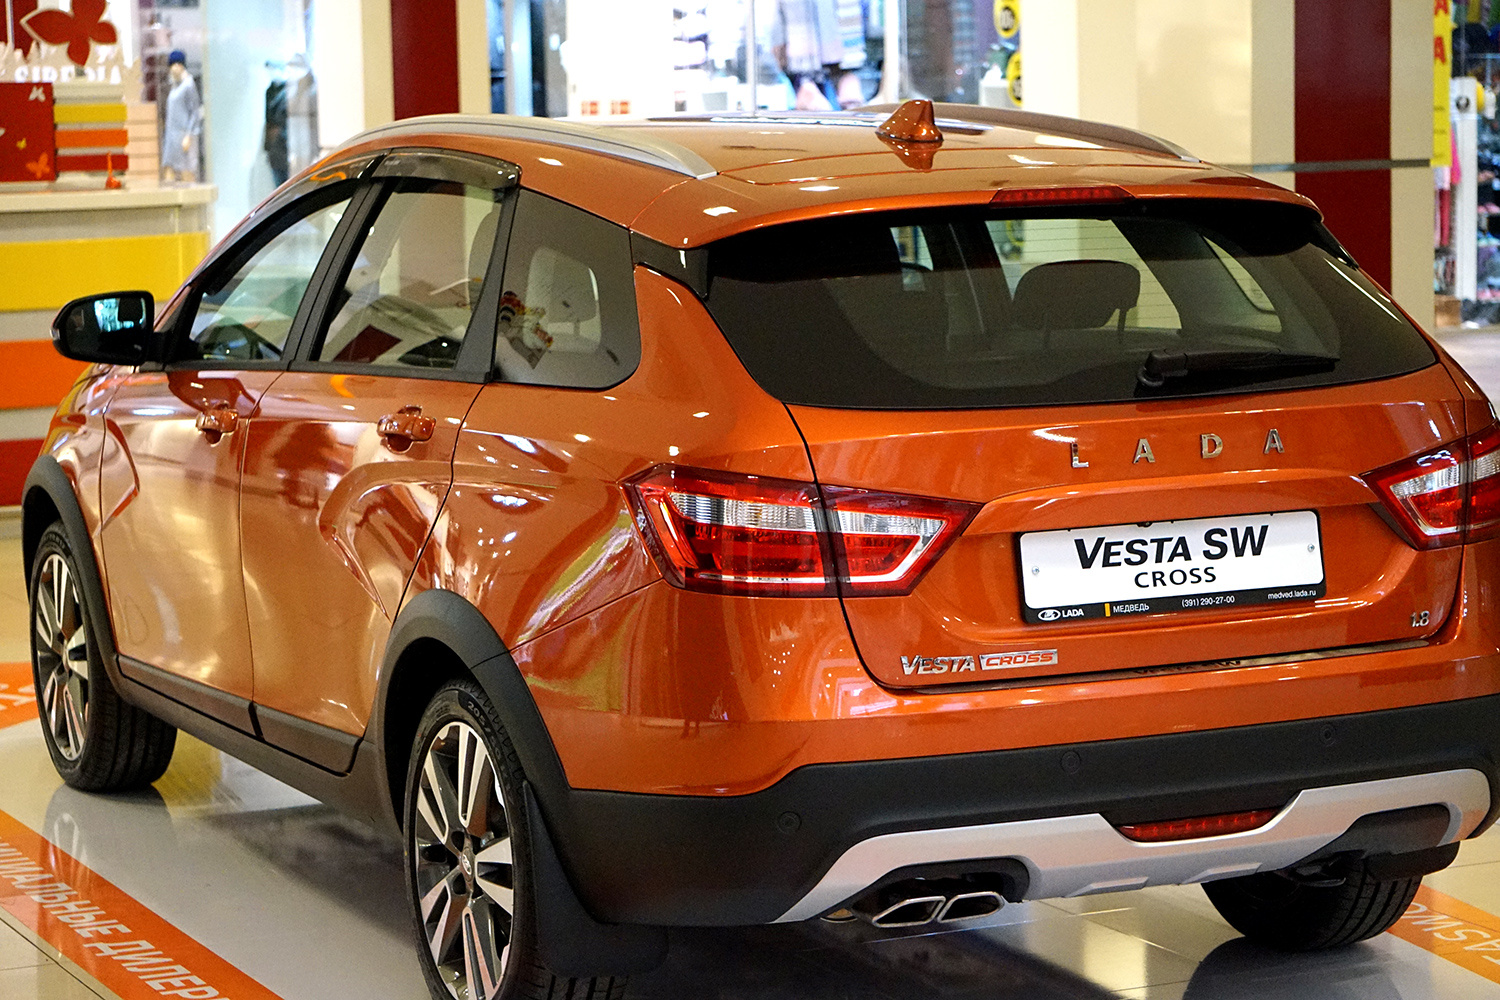 Дилеры сообщили, что первые автомобили LADA Vesta Cross уже распроданы по предзаказам